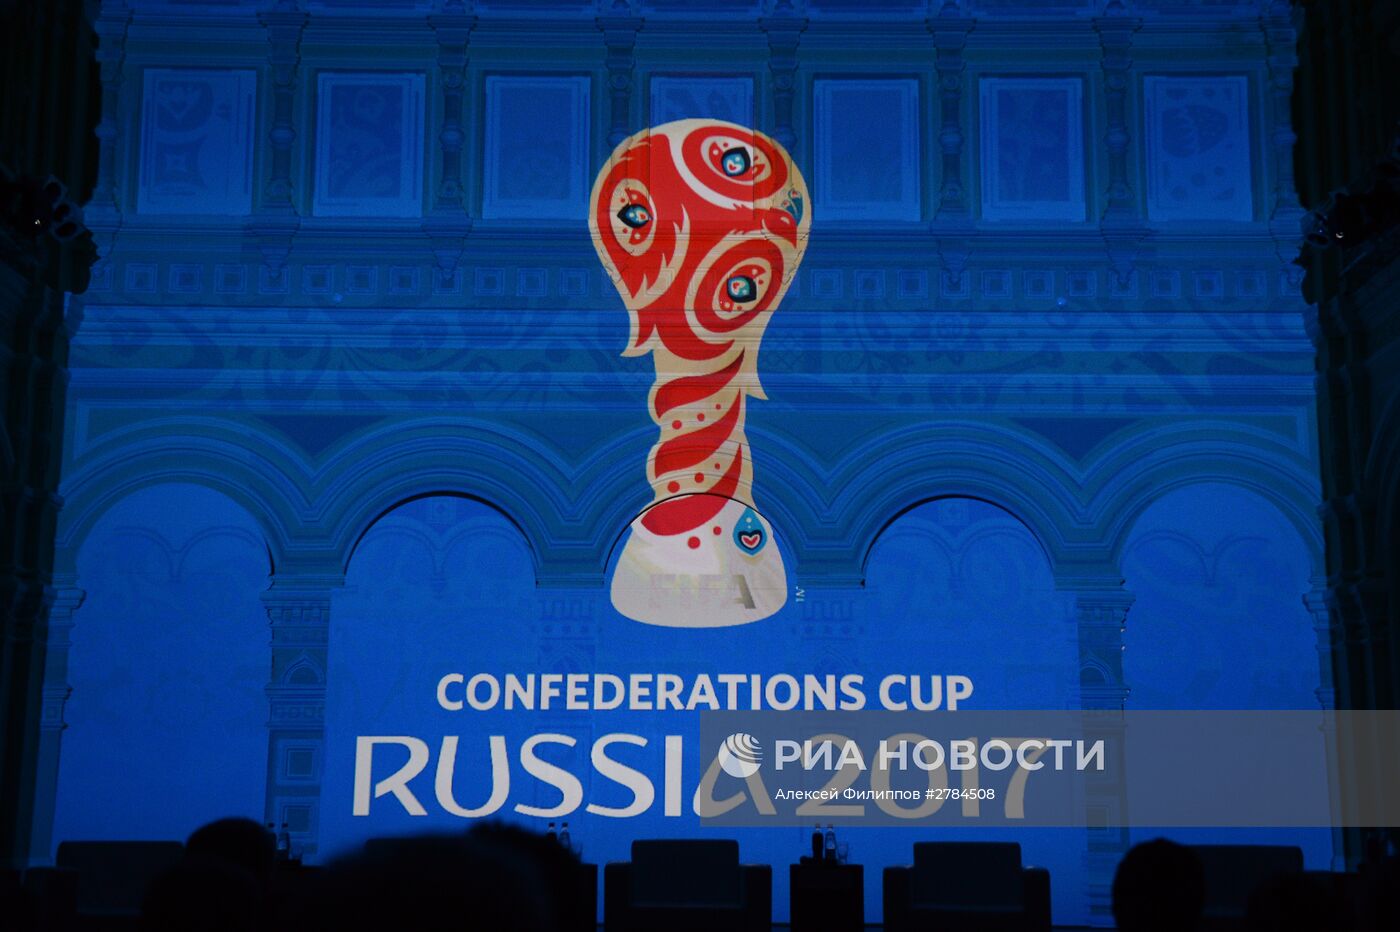 500 дней до старта Кубка Конфедераций FIFA 2017